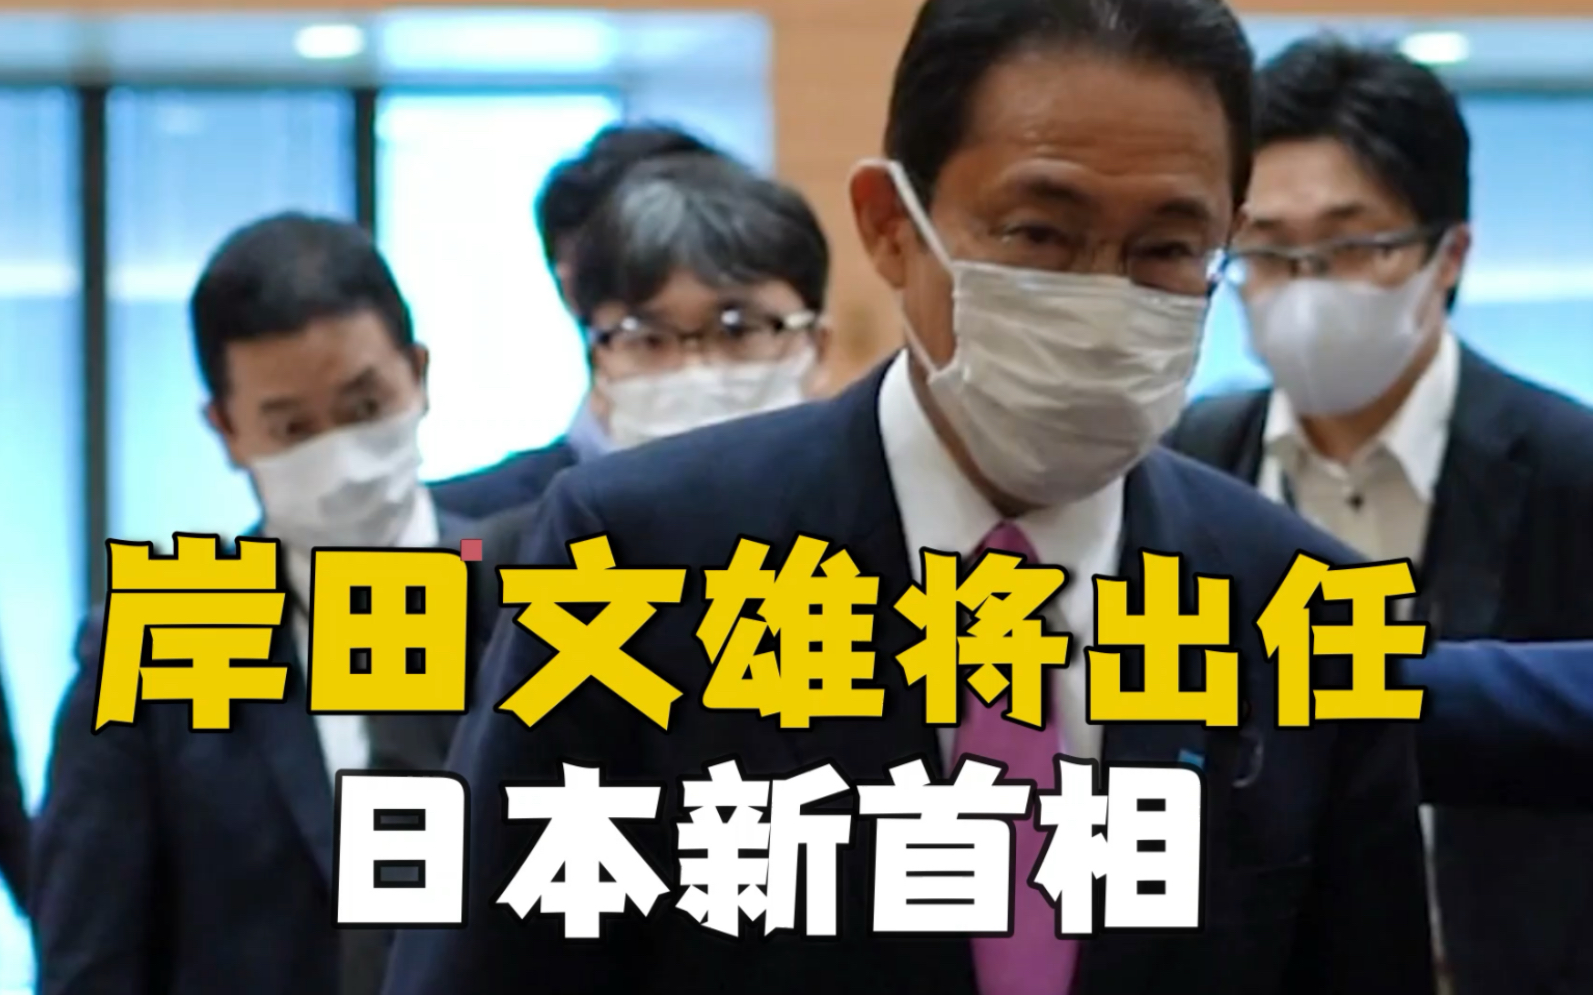 岸田文雄当选日本自民党总裁 将出任日本第100任首相